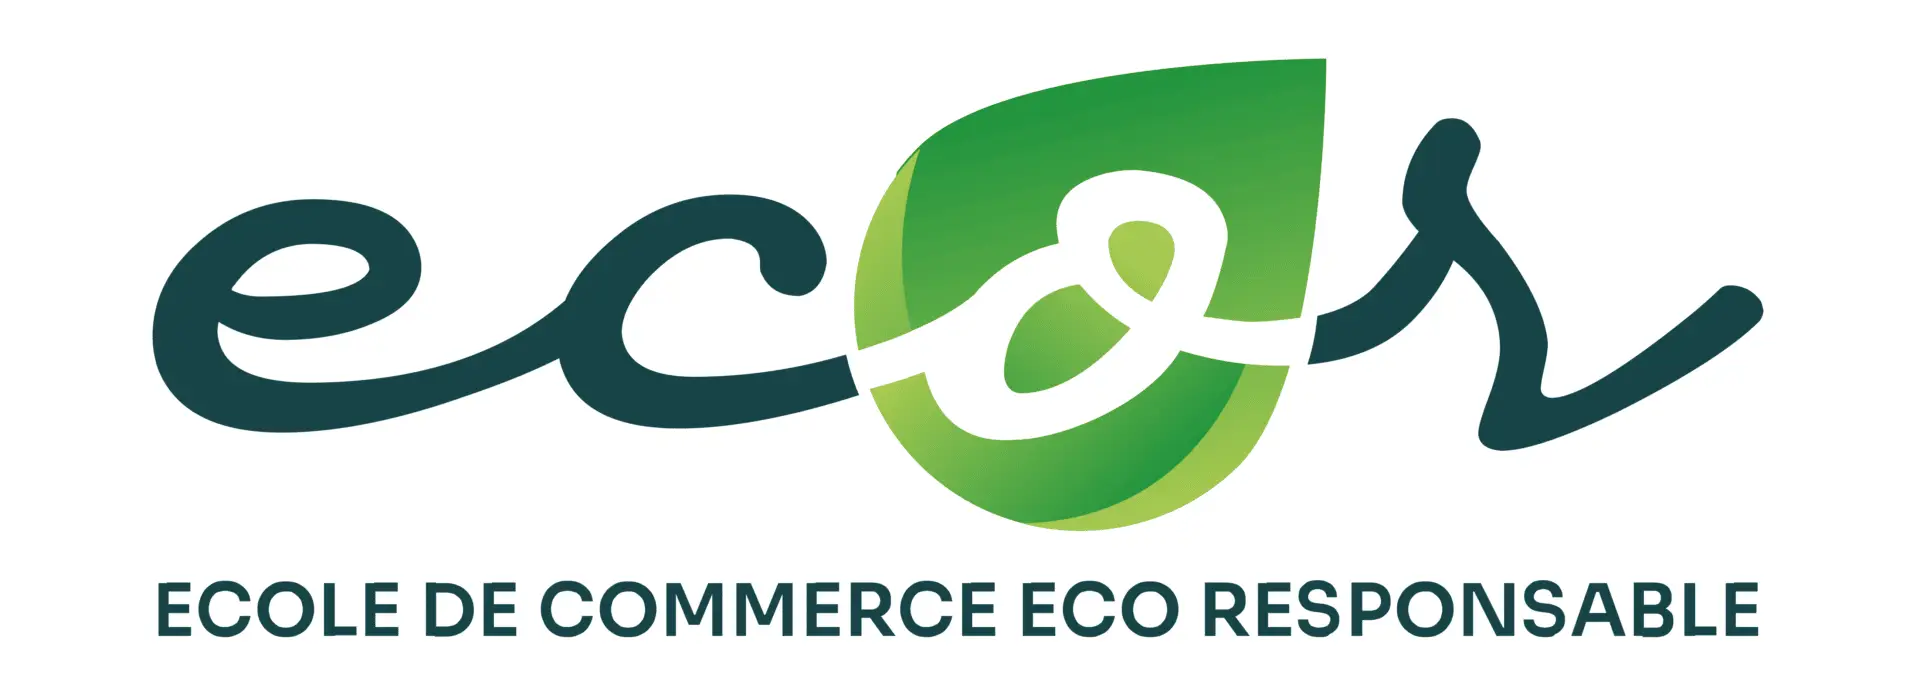 Logo de l'école de commerce ECOR avec un design écologique, combinant un vert foncé et un vert clair avec une feuille et le signe de l'infini, accompagné du texte "école de commerce eco-responsable" en vert.